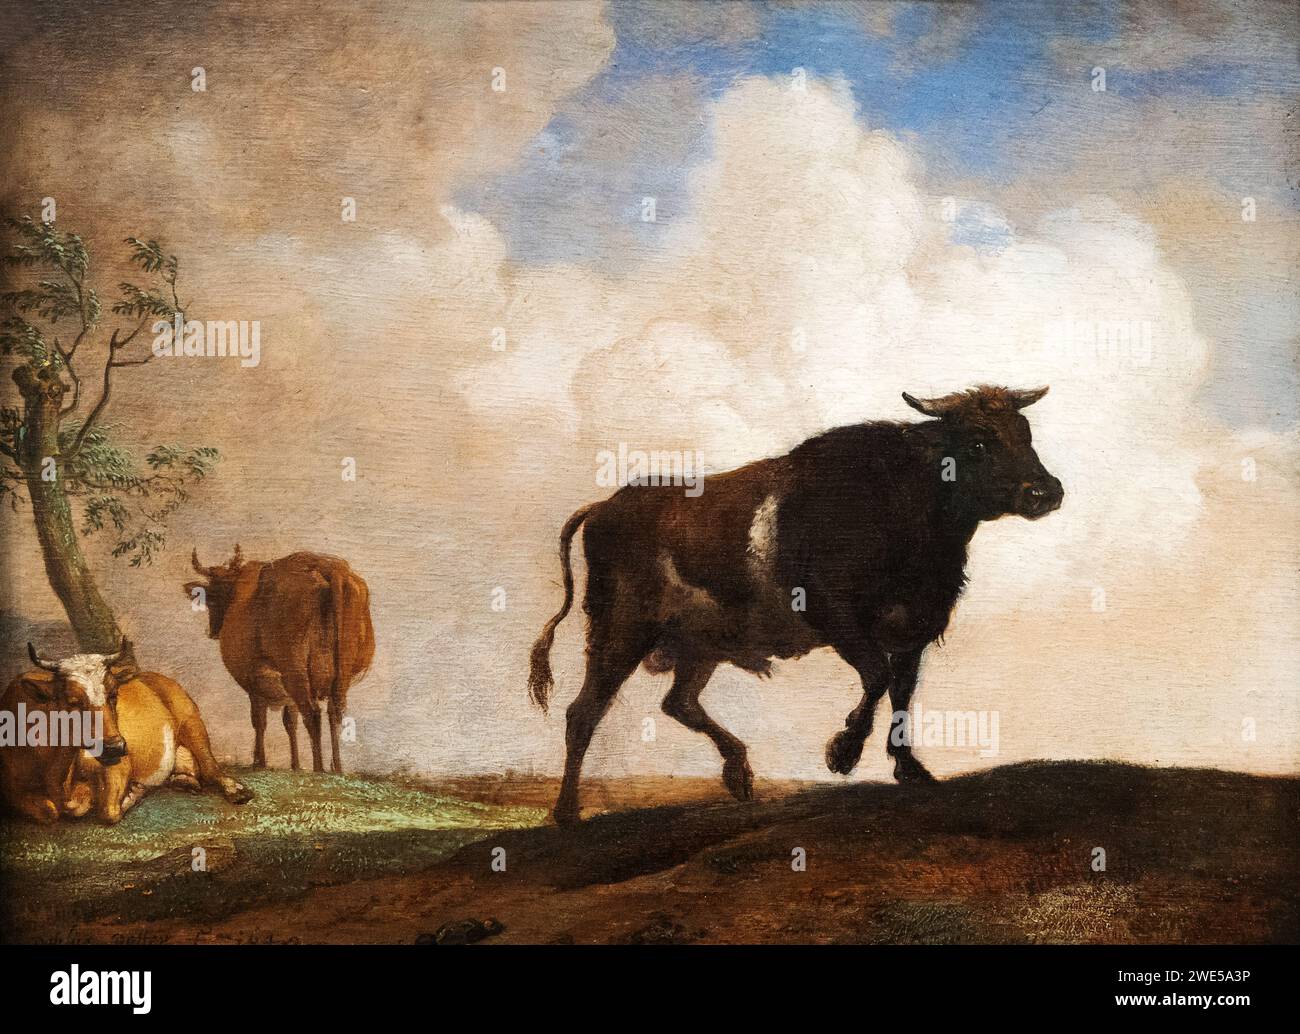 Paulus Potter Gemälde, der Stier, 1649. Niederländischer Tier- und Rindermaler aus dem 17. Jahrhundert, 1625-1654 Stockfoto